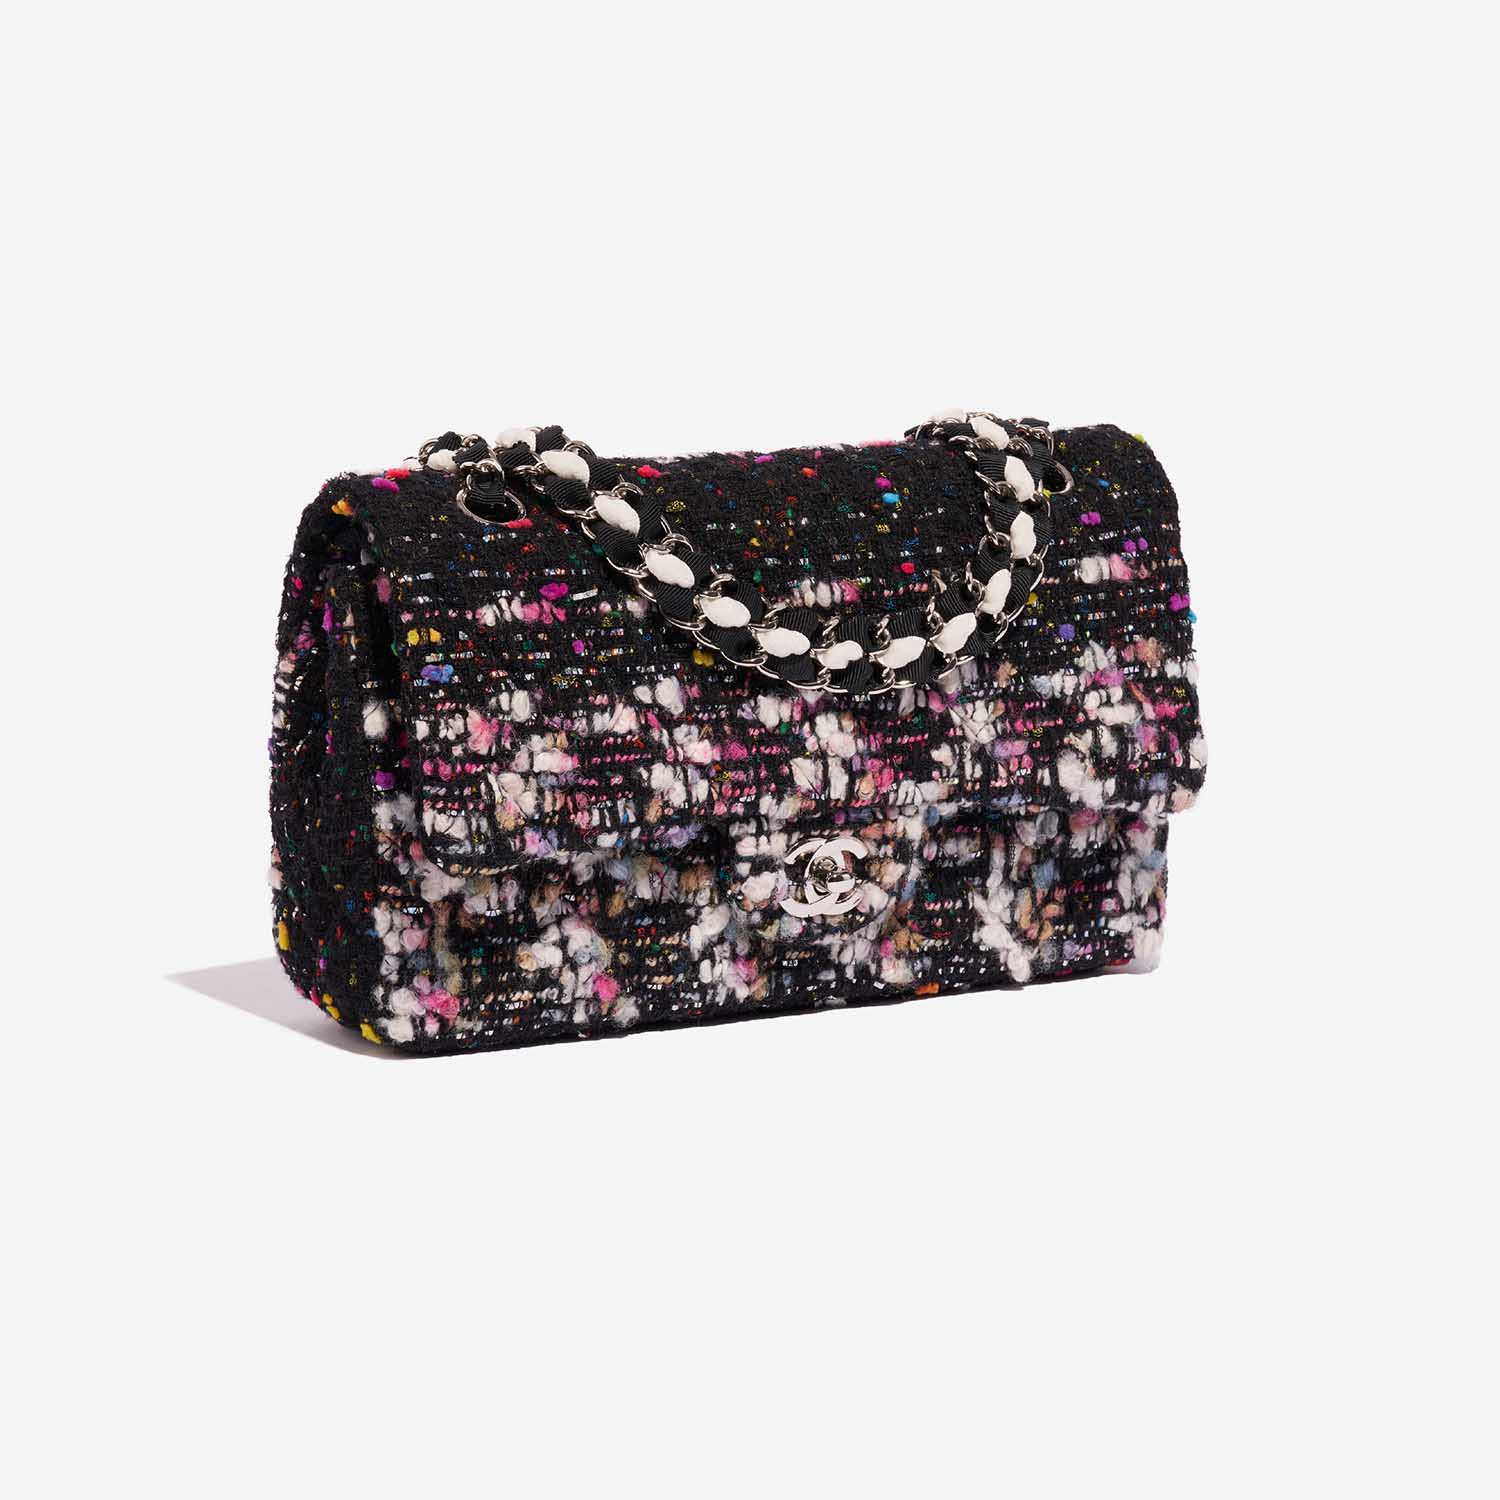 Sac Chanel d'occasion Timeless Medium Tweed Black / Multicolour Black, Multicolour Side Front | Vendez votre sac de créateur sur Saclab.com